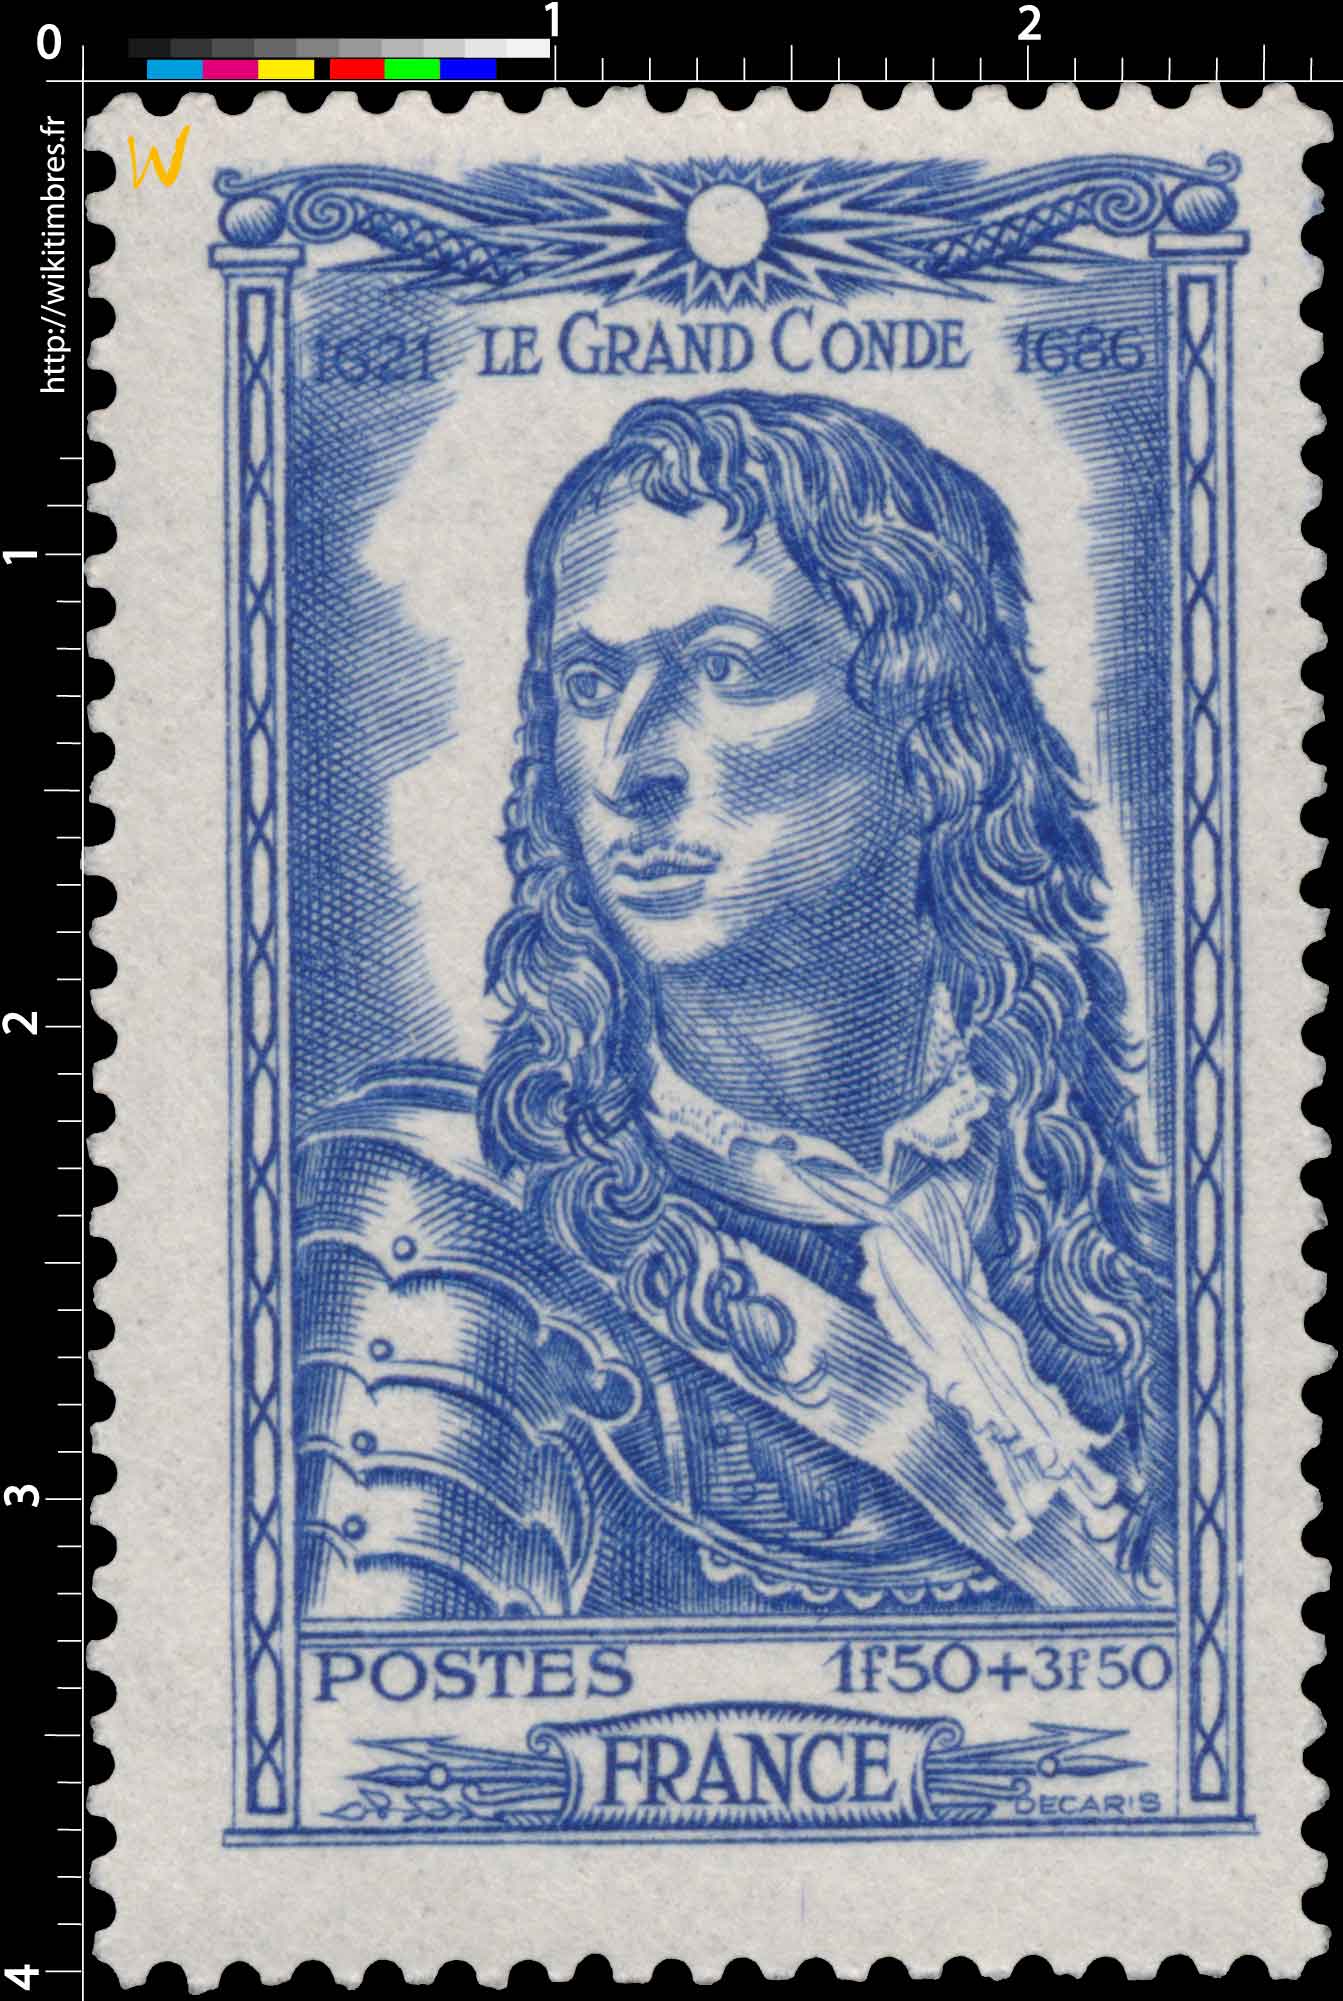 LE GRAND CONDÉ 1621-1686